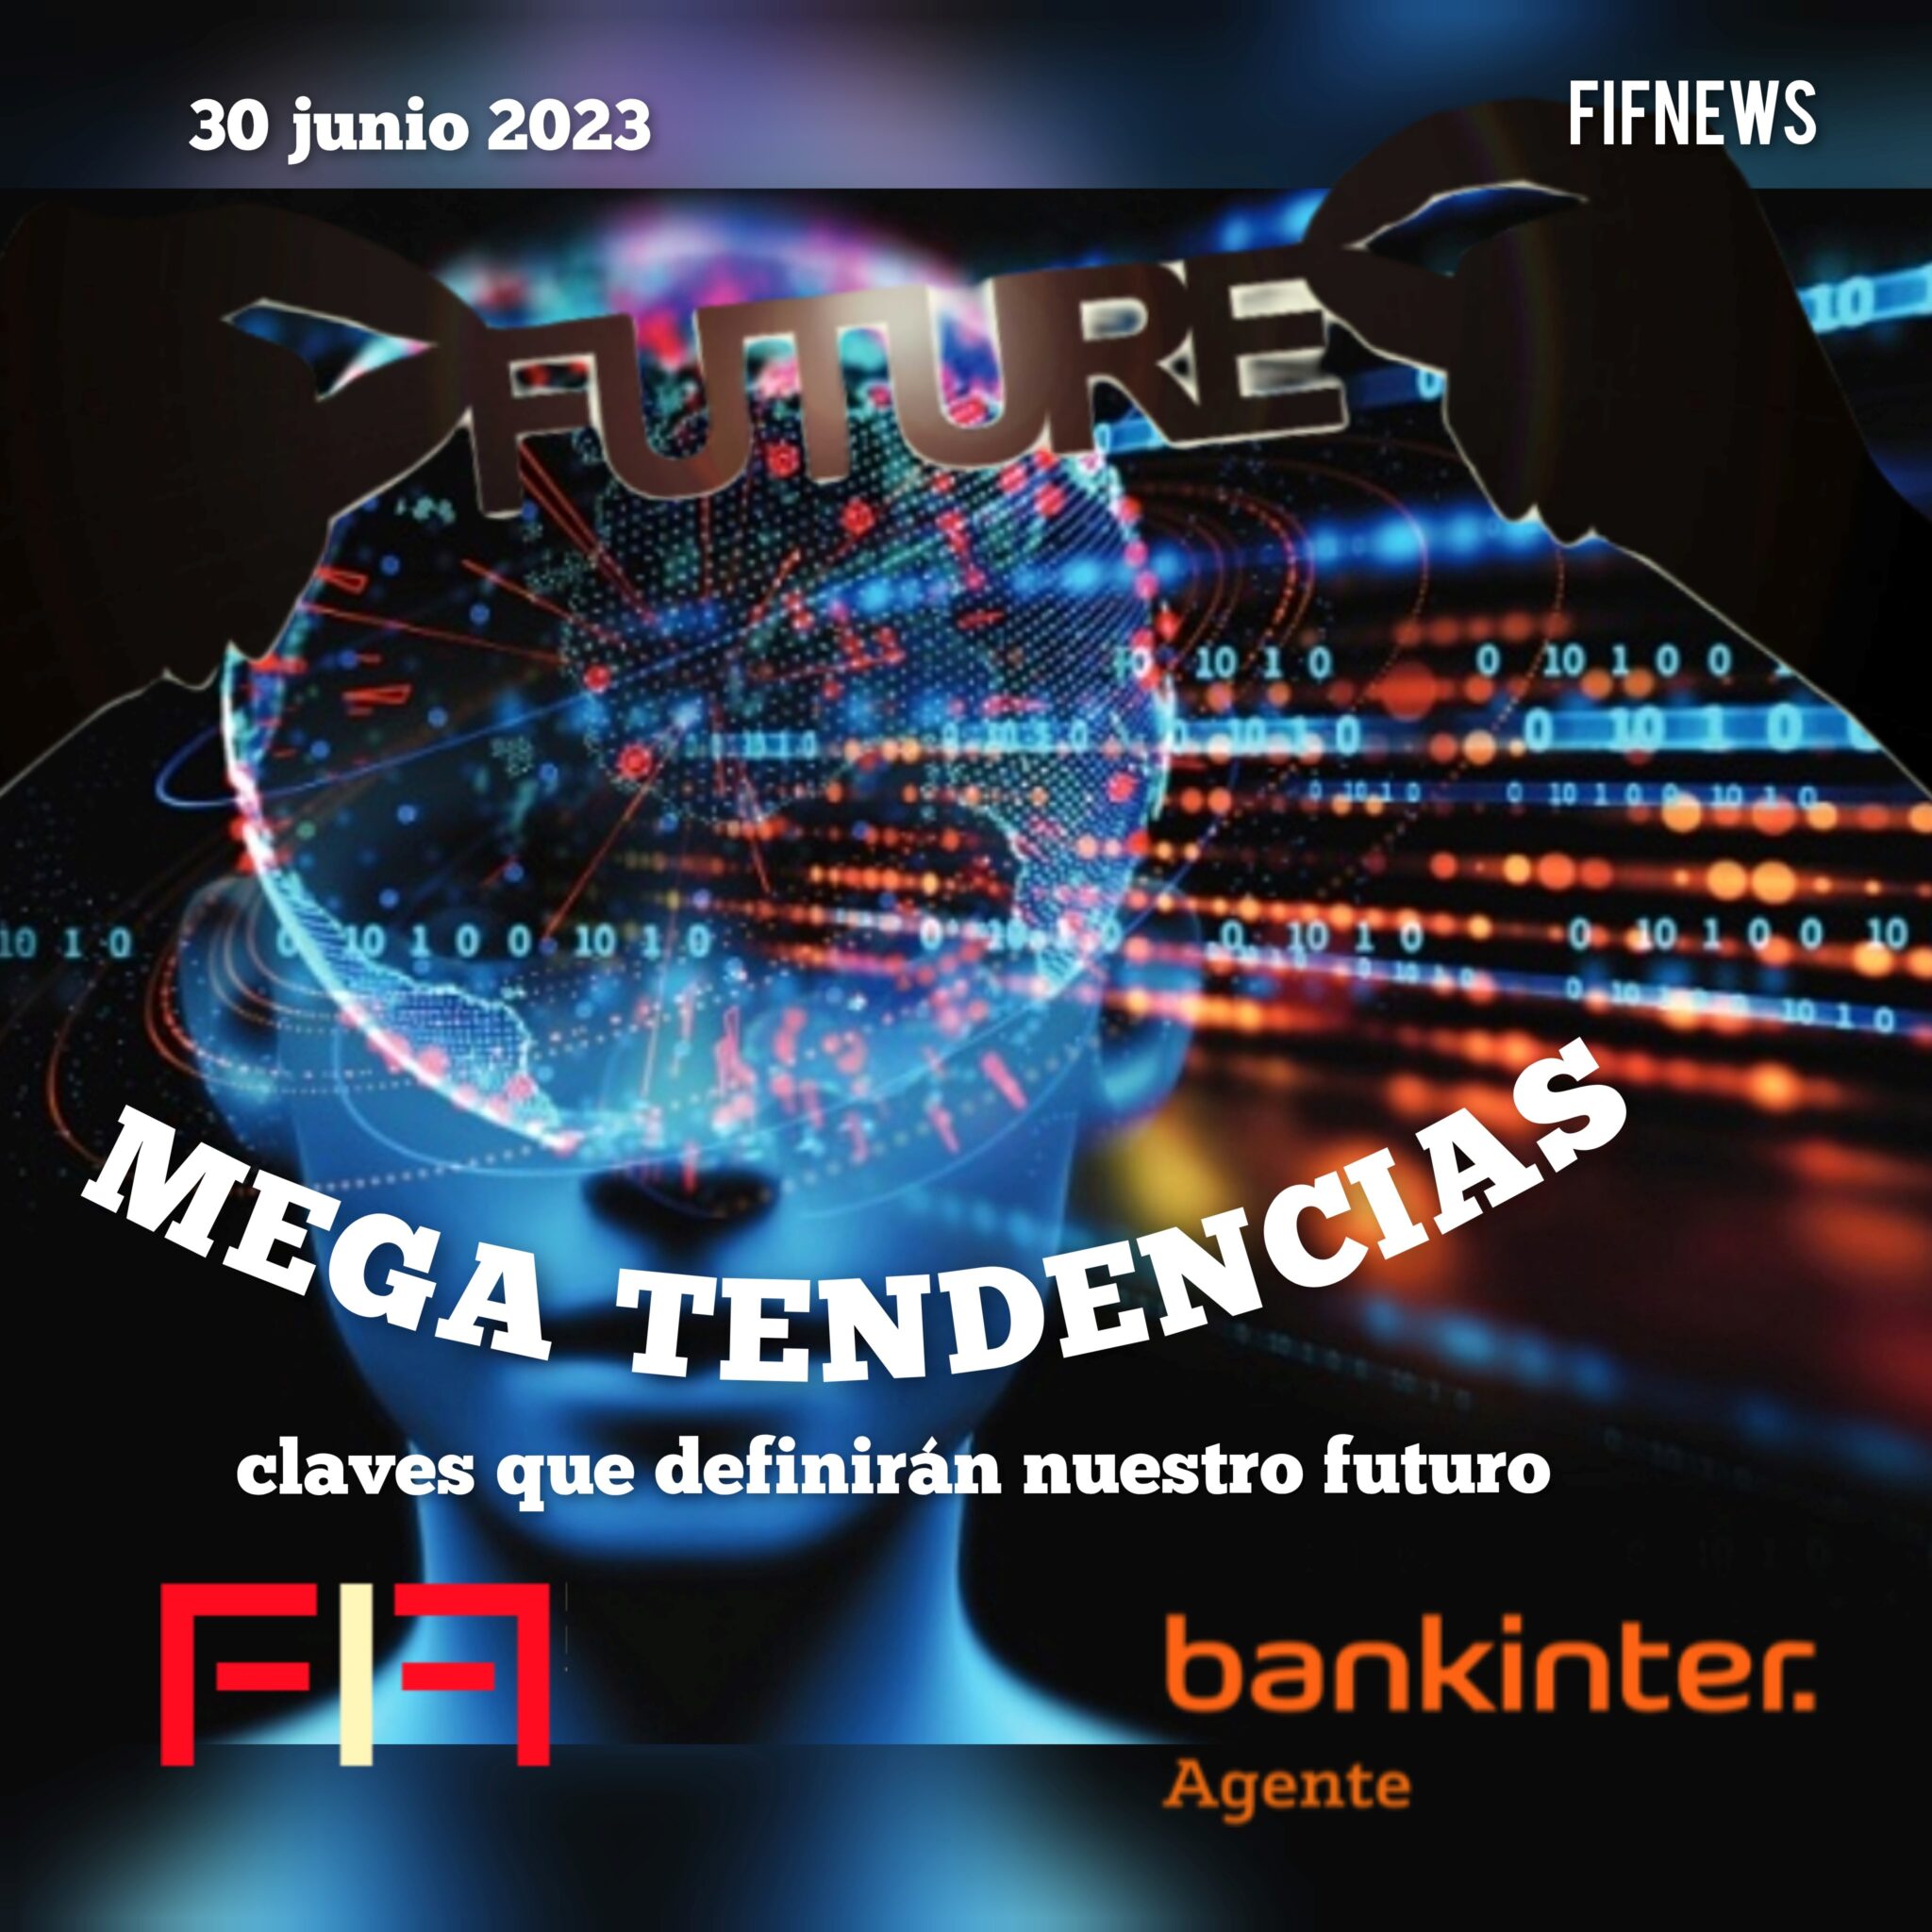 FIF NEWS 30 JUNIO 2023:» MEGATENDENCIAS, claves que definirán nuestro futuro»